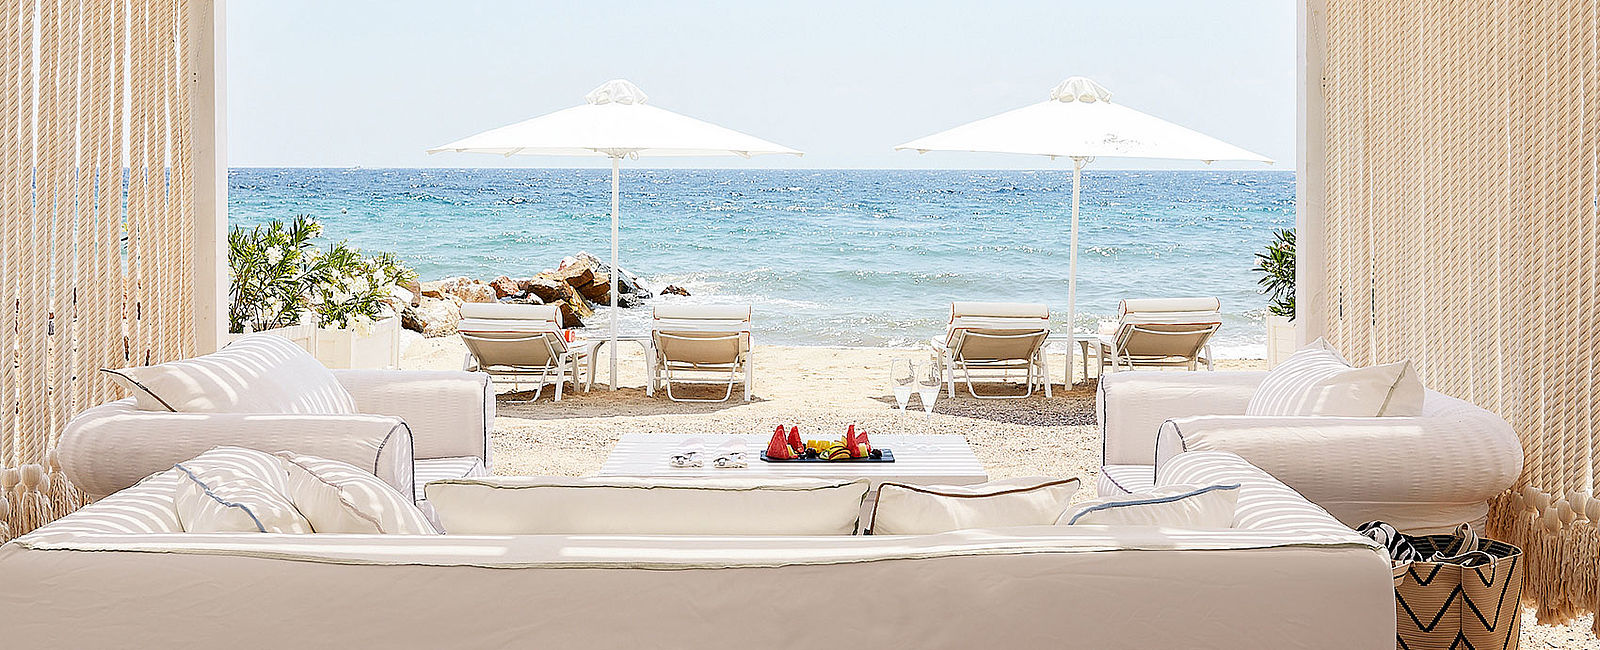 VERY SPECIAL HOTEL
 Danai Beach Resort & Villas 
 Luxus-Wohlfühlrefugium 